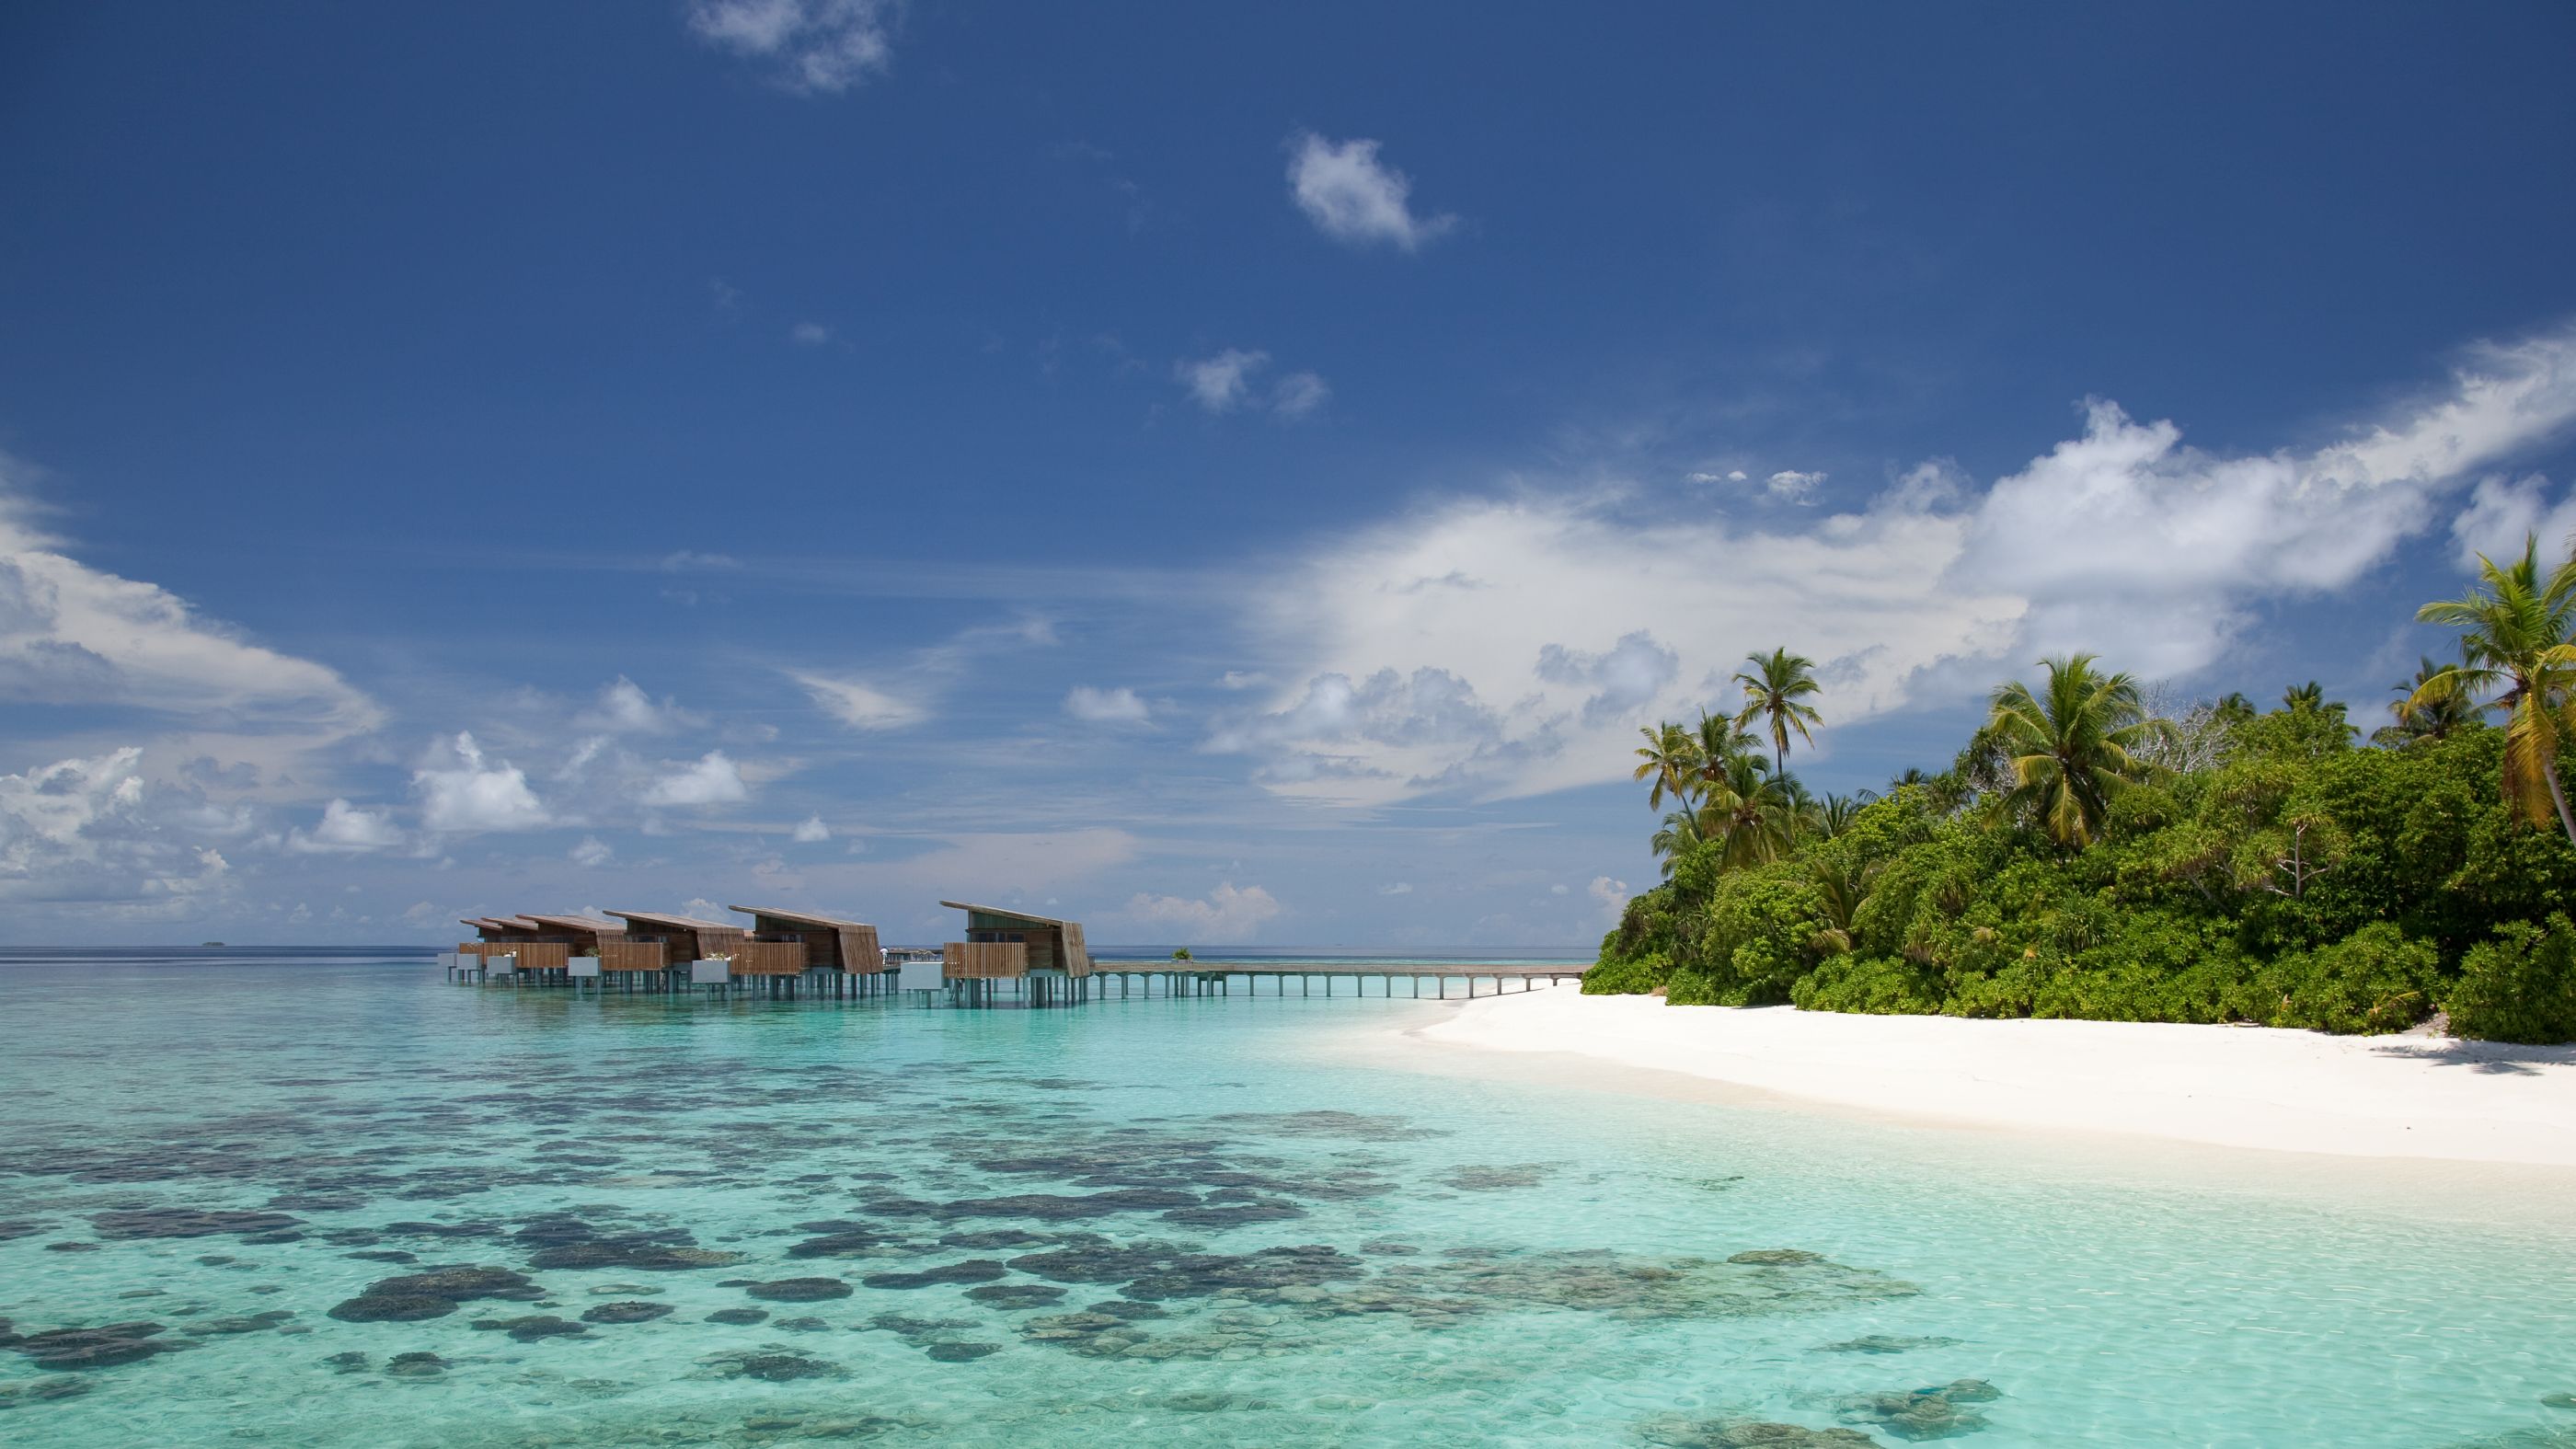 Water villas and beach of Park Hyatt Maldives